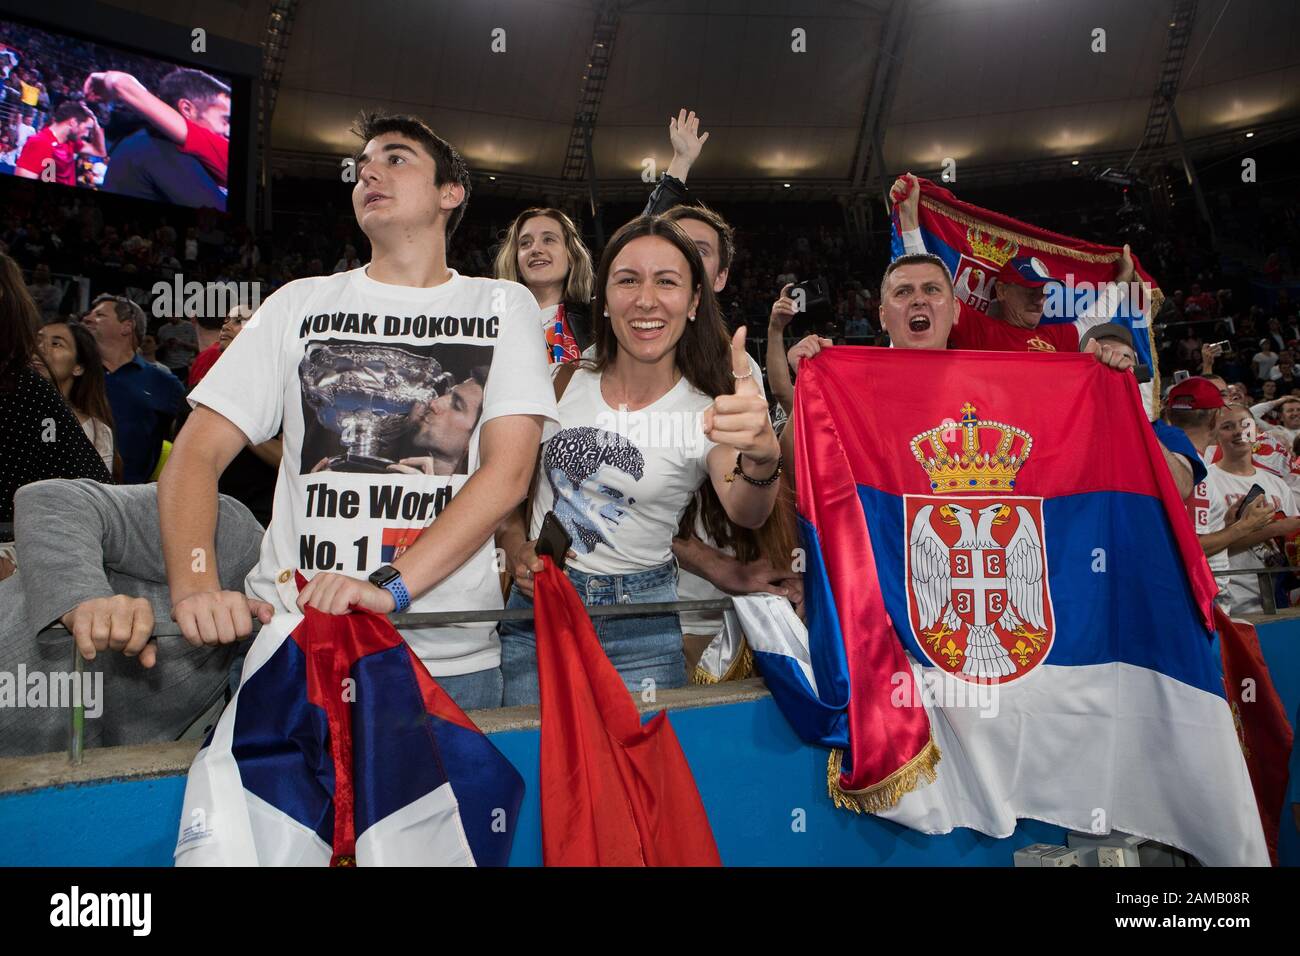 Les fans célèbrent après que la Serbie a remporté la coupe 2-1 contre l'Espagne lors de la finale de la coupe ATP 2020 à la Ken Rosewall Arena, à Sydney, en Australie, le 12 janvier 2020. Photo De Peter Dovgan. Banque D'Images